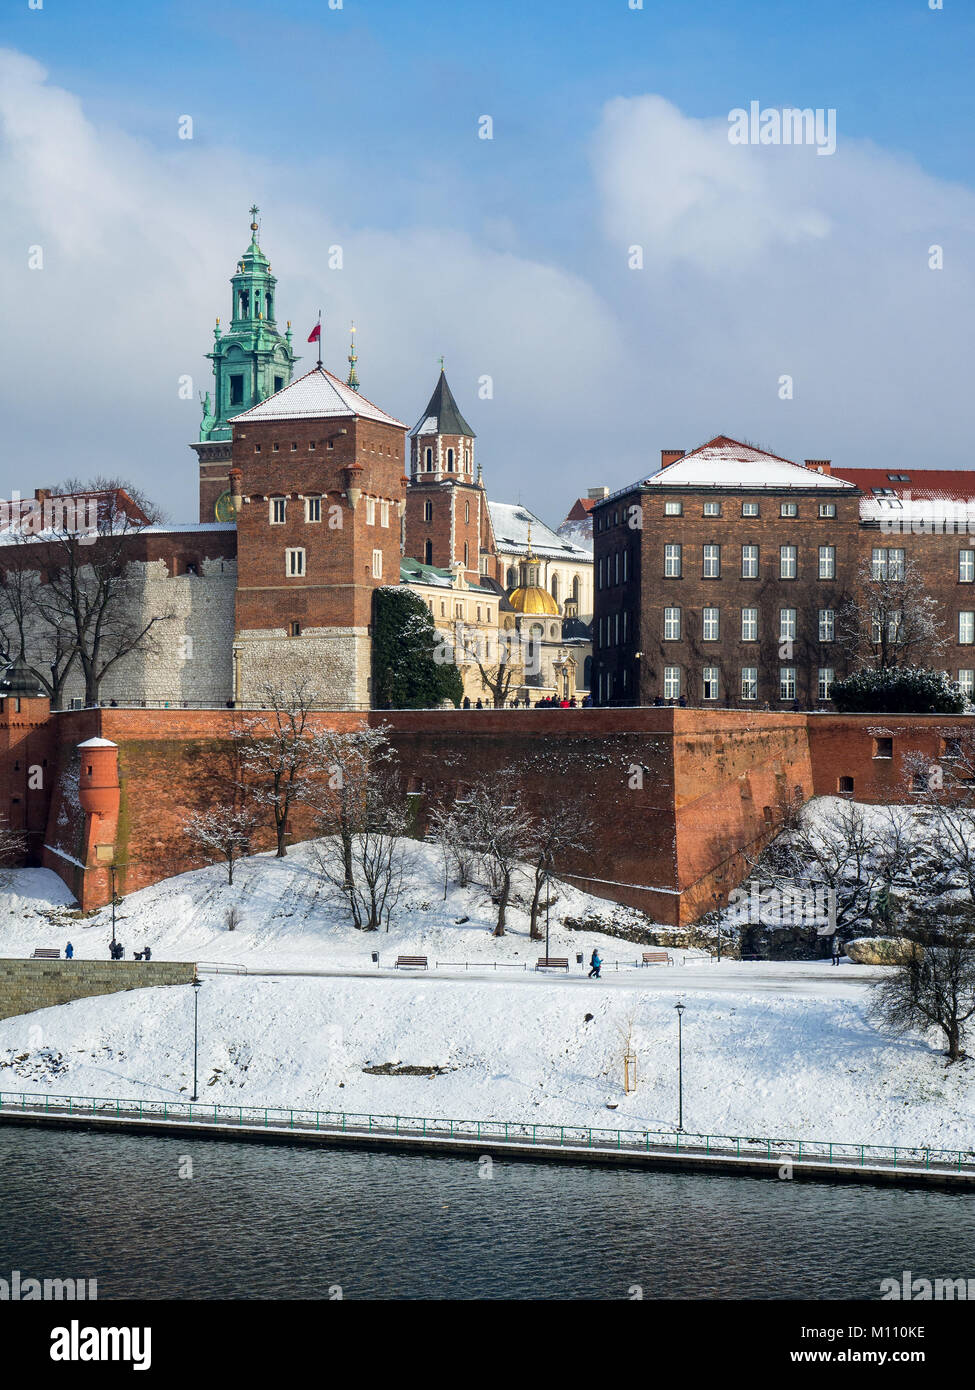 KrakÃ³W, Pologne. Historique royal de Wawel, la cathédrale de style Renaissance avec Sigmund Chapelle au dôme doré et Vistule en hiver. Banque D'Images